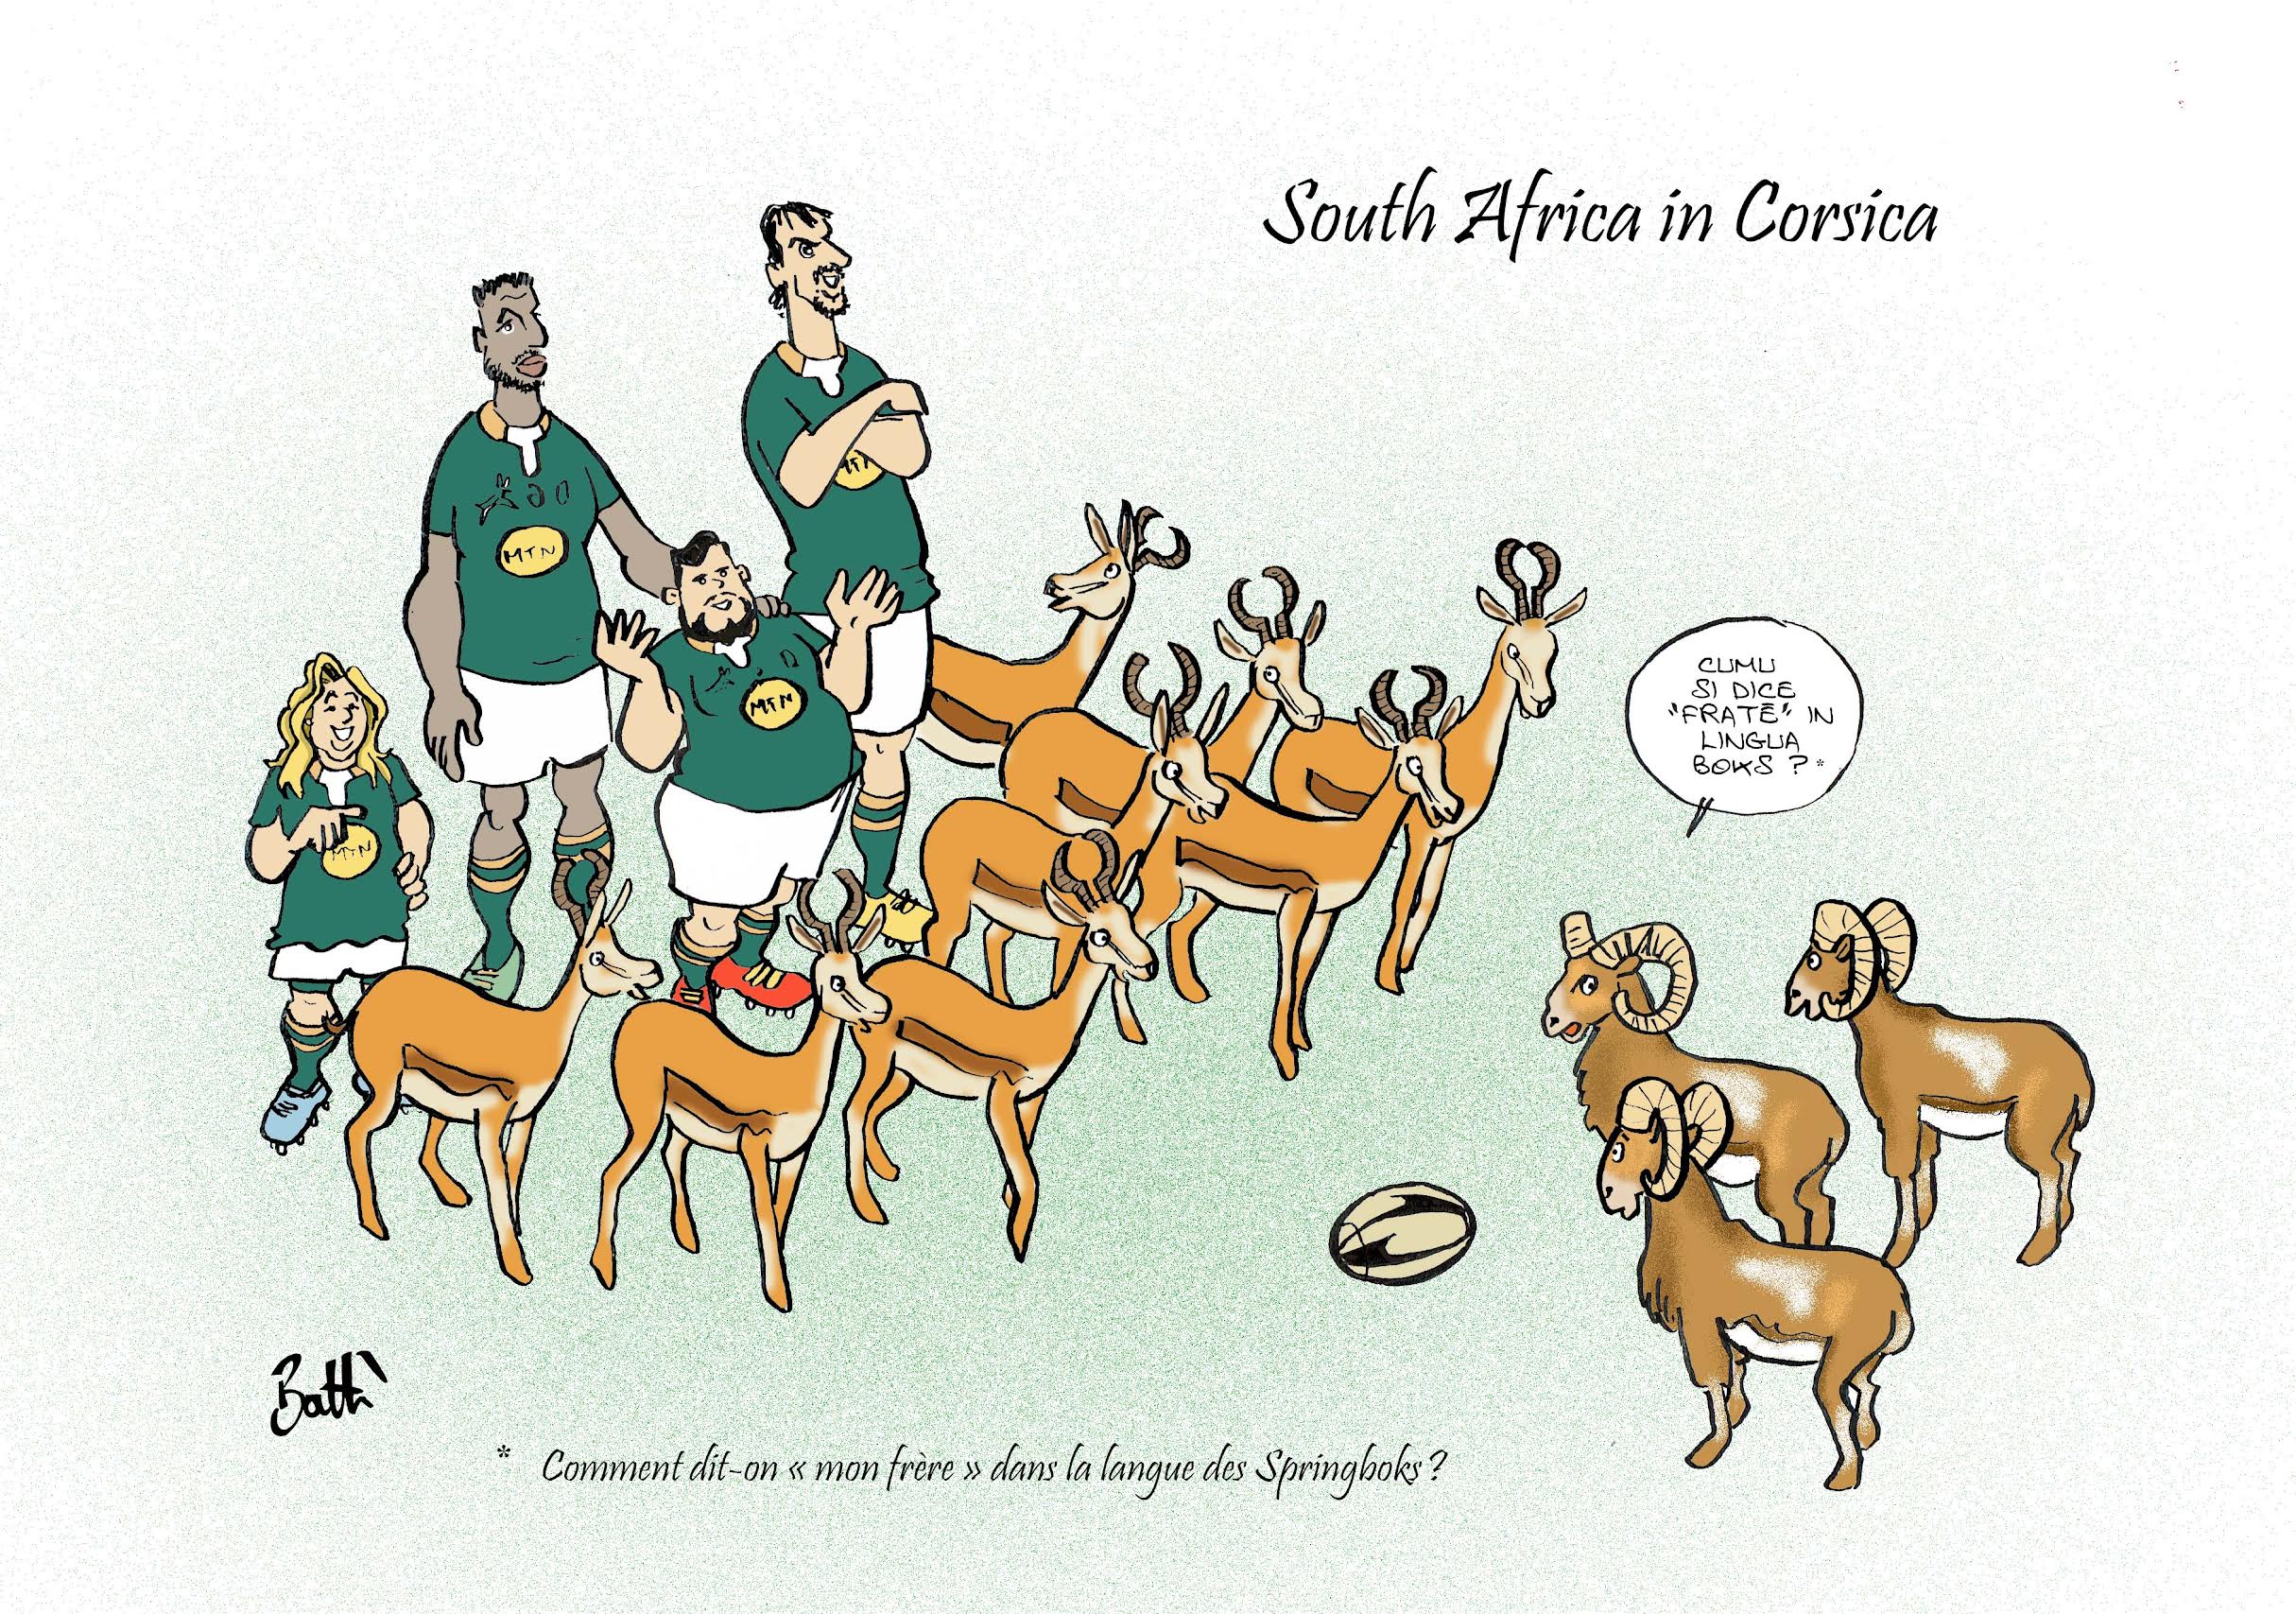 Faf De Klerk, Siya Kolisi, Carlu Sadie, Eben Etzebeth seront en Corse avec la sélection Sud Africaine en préparation de la coupe du monde de rugby 2023. Welcome !